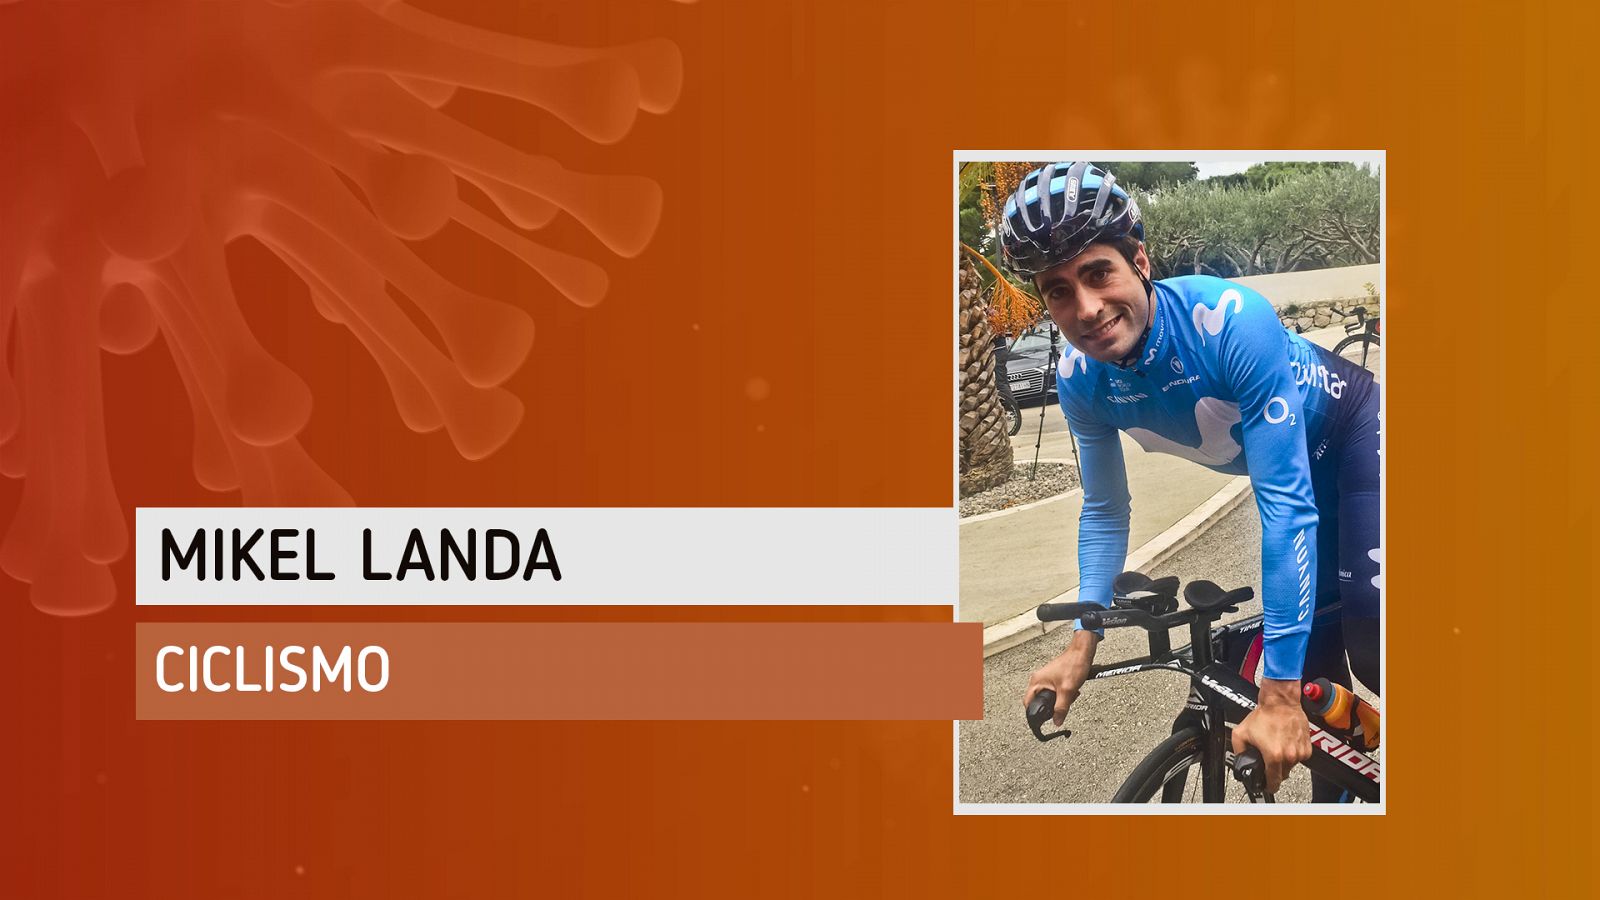 Mikel Landa, ya en bici y en la carretera: "Estoy contento y muy motivado"